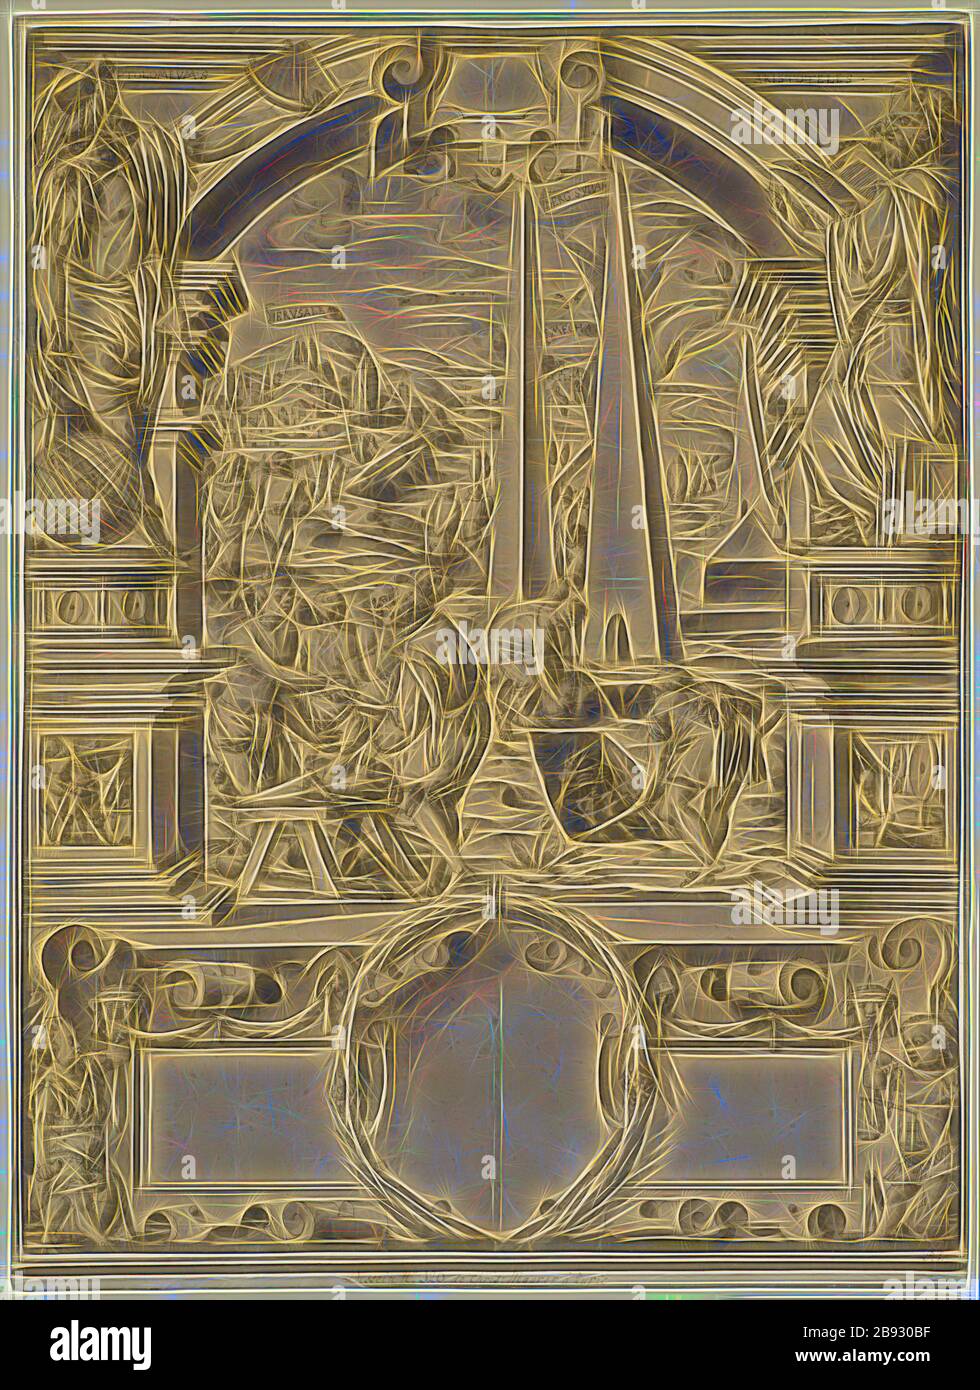 Rottura del disco con Leonhard Thurneysser in Oriente con l'acquisizione di mummie, fiancheggiata da Tolomeo e Aristotele, sotto la borchia bianca, c. 1579, penna in nero, lavata grigia, montata vecchia, folio: 64,1 x 49,2 cm, O. l., designata: PTOLOMEVE [M barrata fuori], o. r .: ARISTOTELES, in nastri di scrittura nel paesaggio: IERVSALEM, MOUNTAIN SŸNAI, MECHA, Christoph Murer, Zürich 1558–1614 Winterthur, Reimagined by Gibon, design di calore allegro di luminosità e raggi di luce radianza. Arte classica reinventata con un tocco moderno. Fotografia ispirata al futurismo, che abbraccia l'energia dinamica del moderno Foto Stock